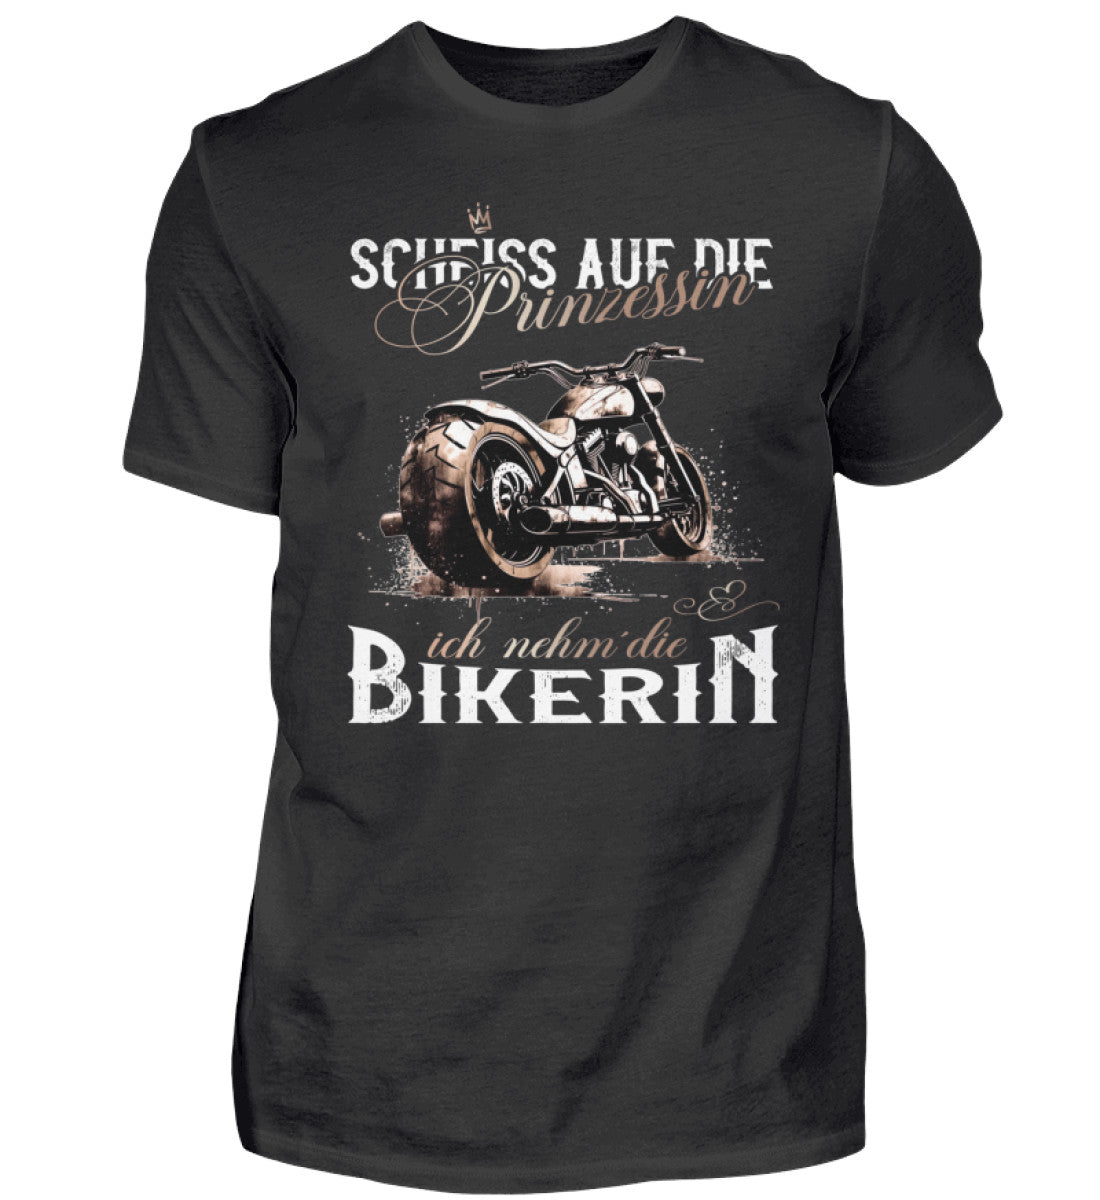 Ein Biker T-Shirt für Motorradfahrer von Wingbikers mit dem Aufdruck, Scheiß auf die Prinzessin - Ich nehm´ die Bikerin - in schwarz.